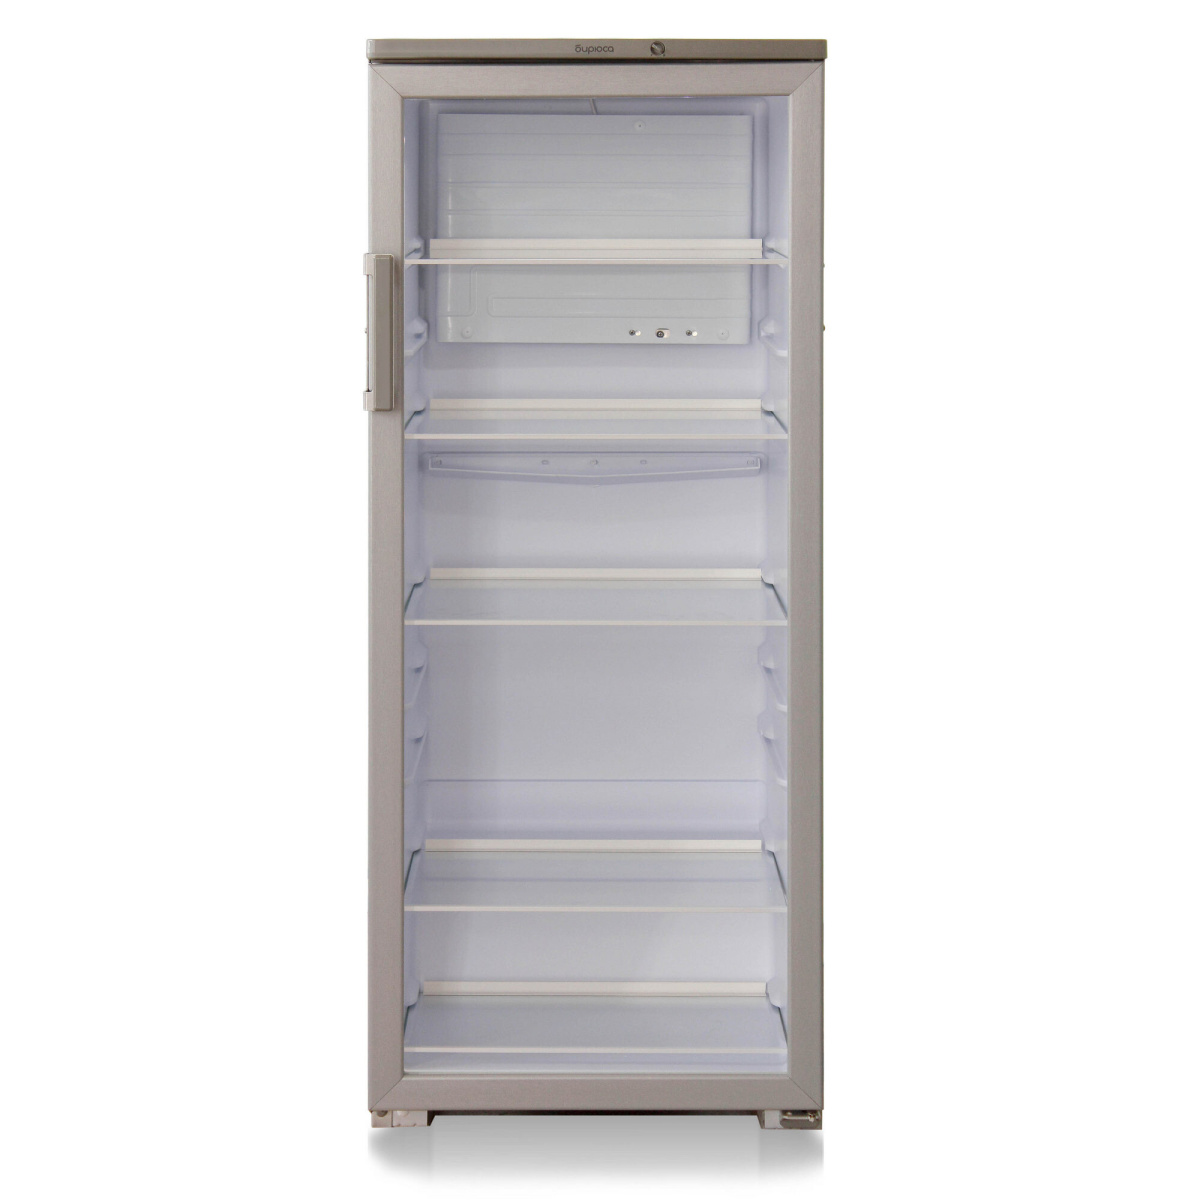 Бирюса новосибирске купить. Холодильный шкаф Бирюса 290. Холодильник Бирюса 290 витрина. Холодильник - витрина Бирюса 290е. Шкаф-витрина Бирюса b290.